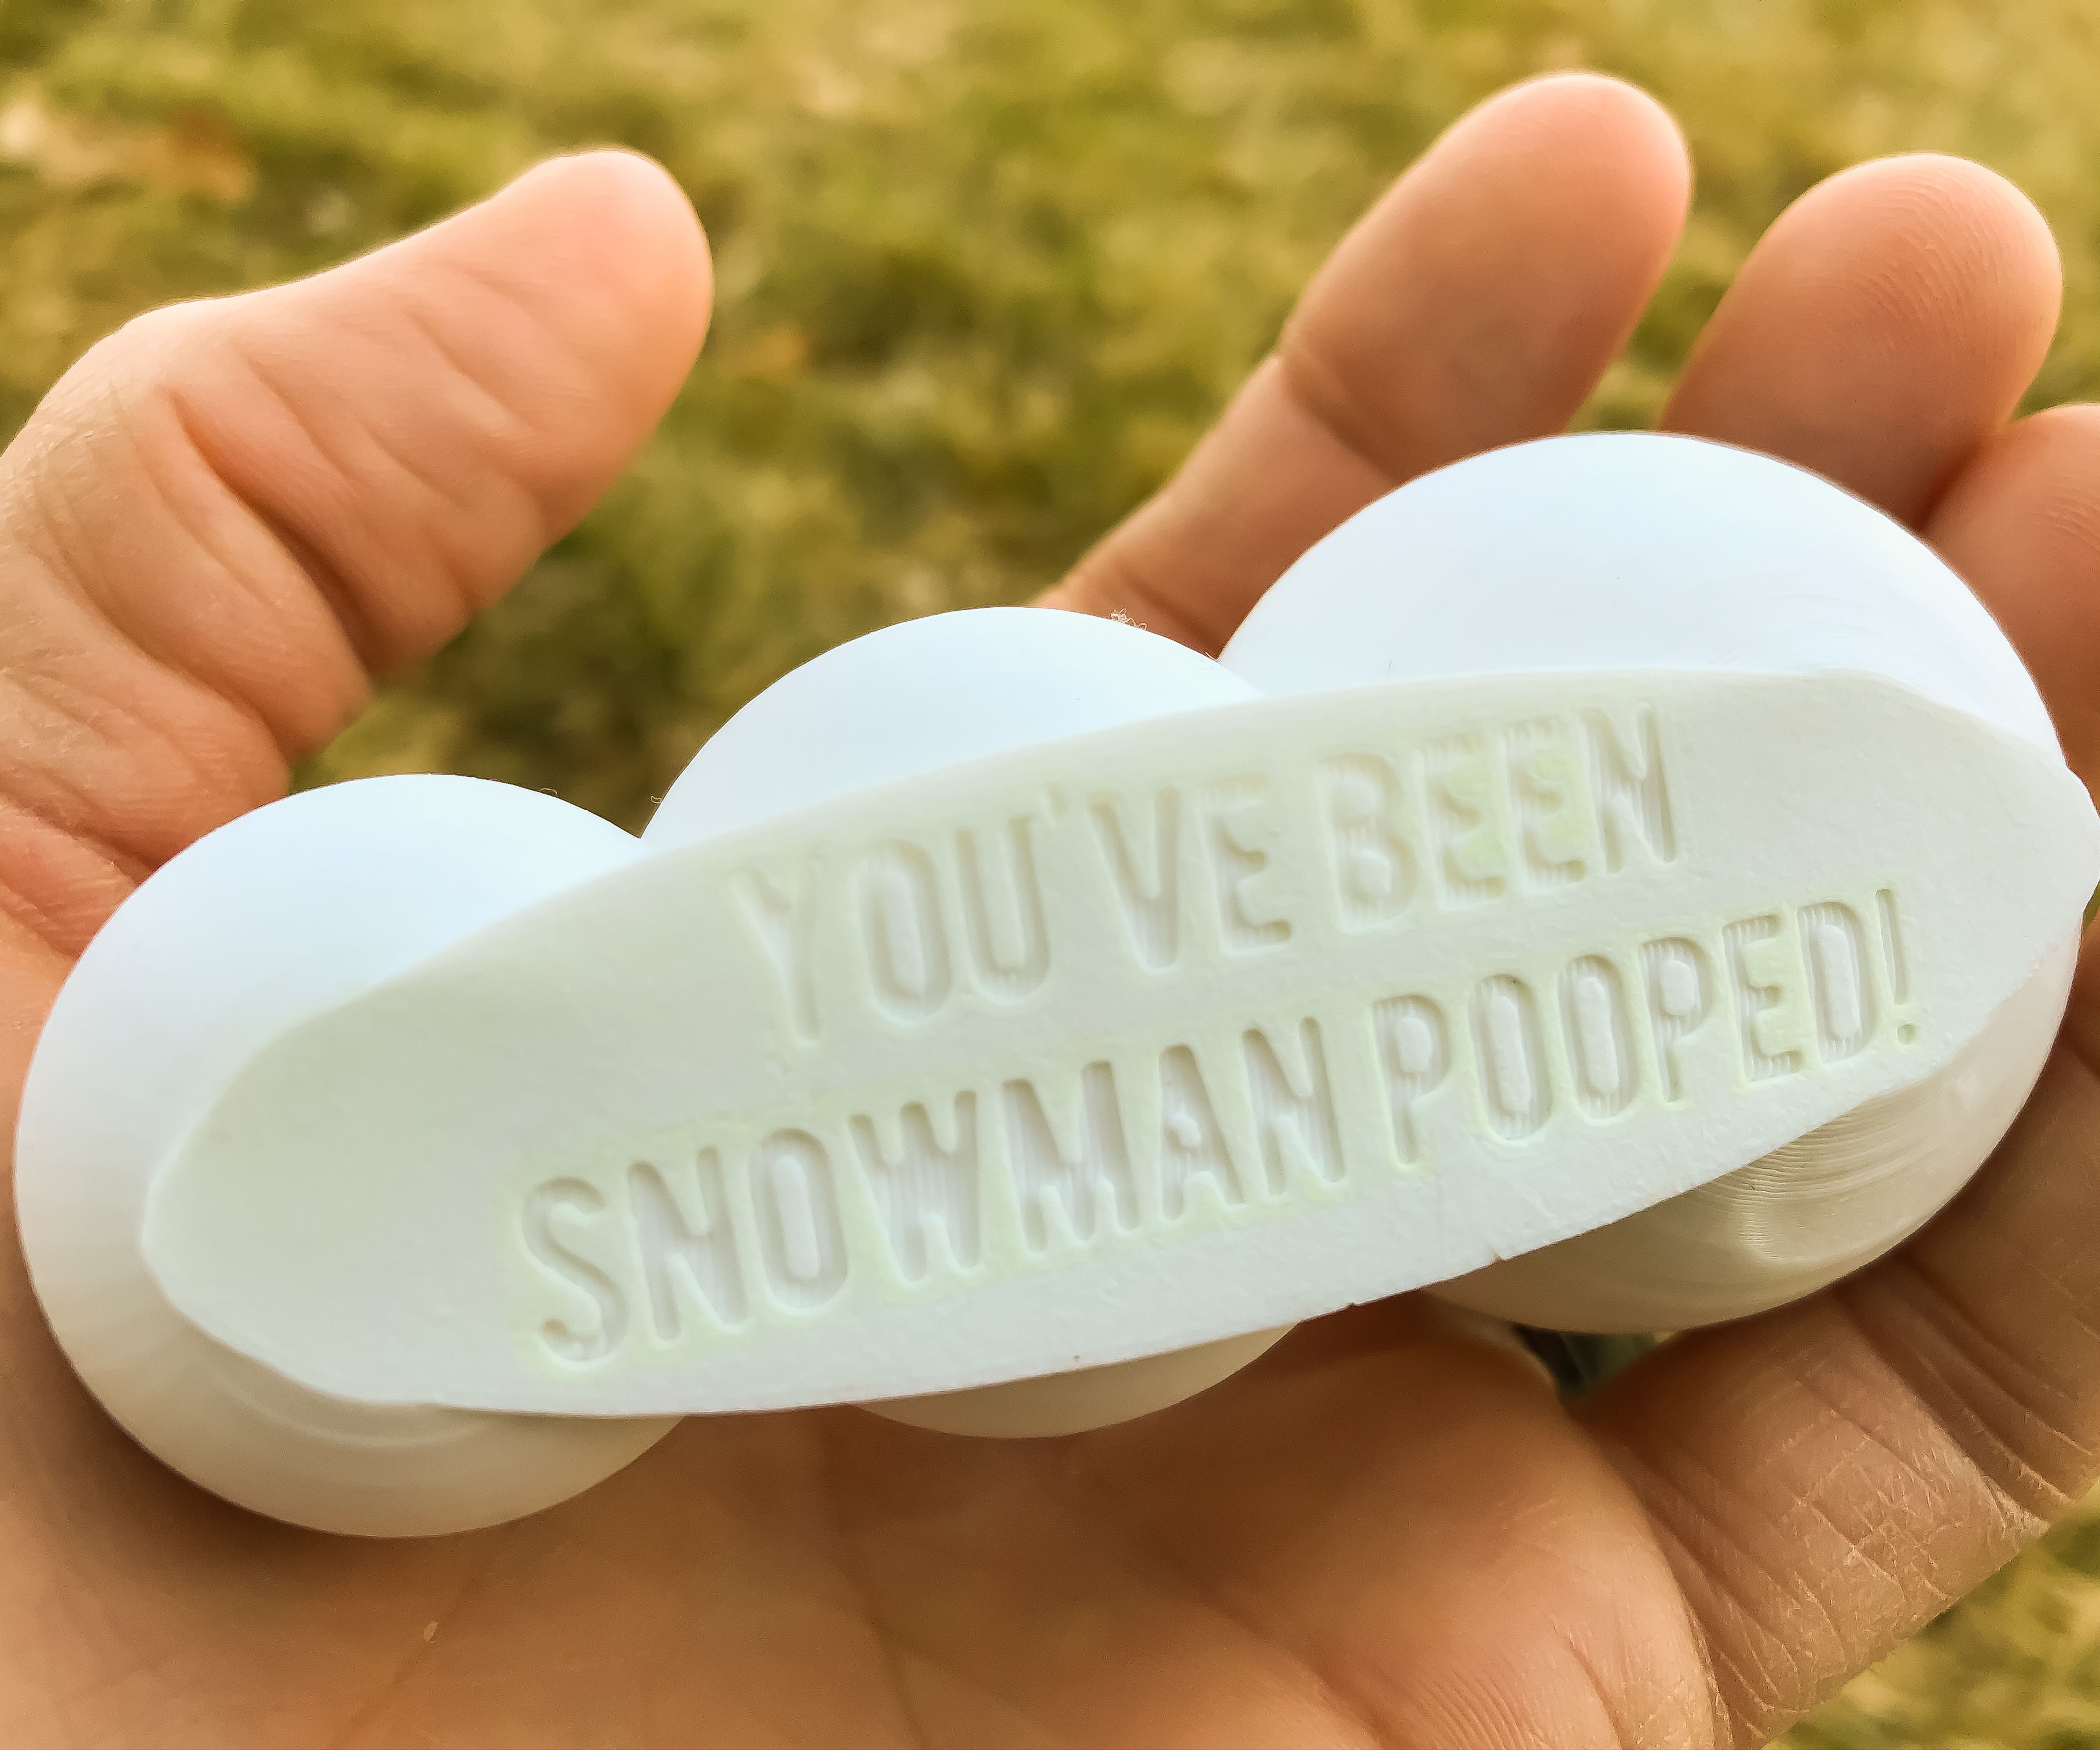 Snowman Poop Prank